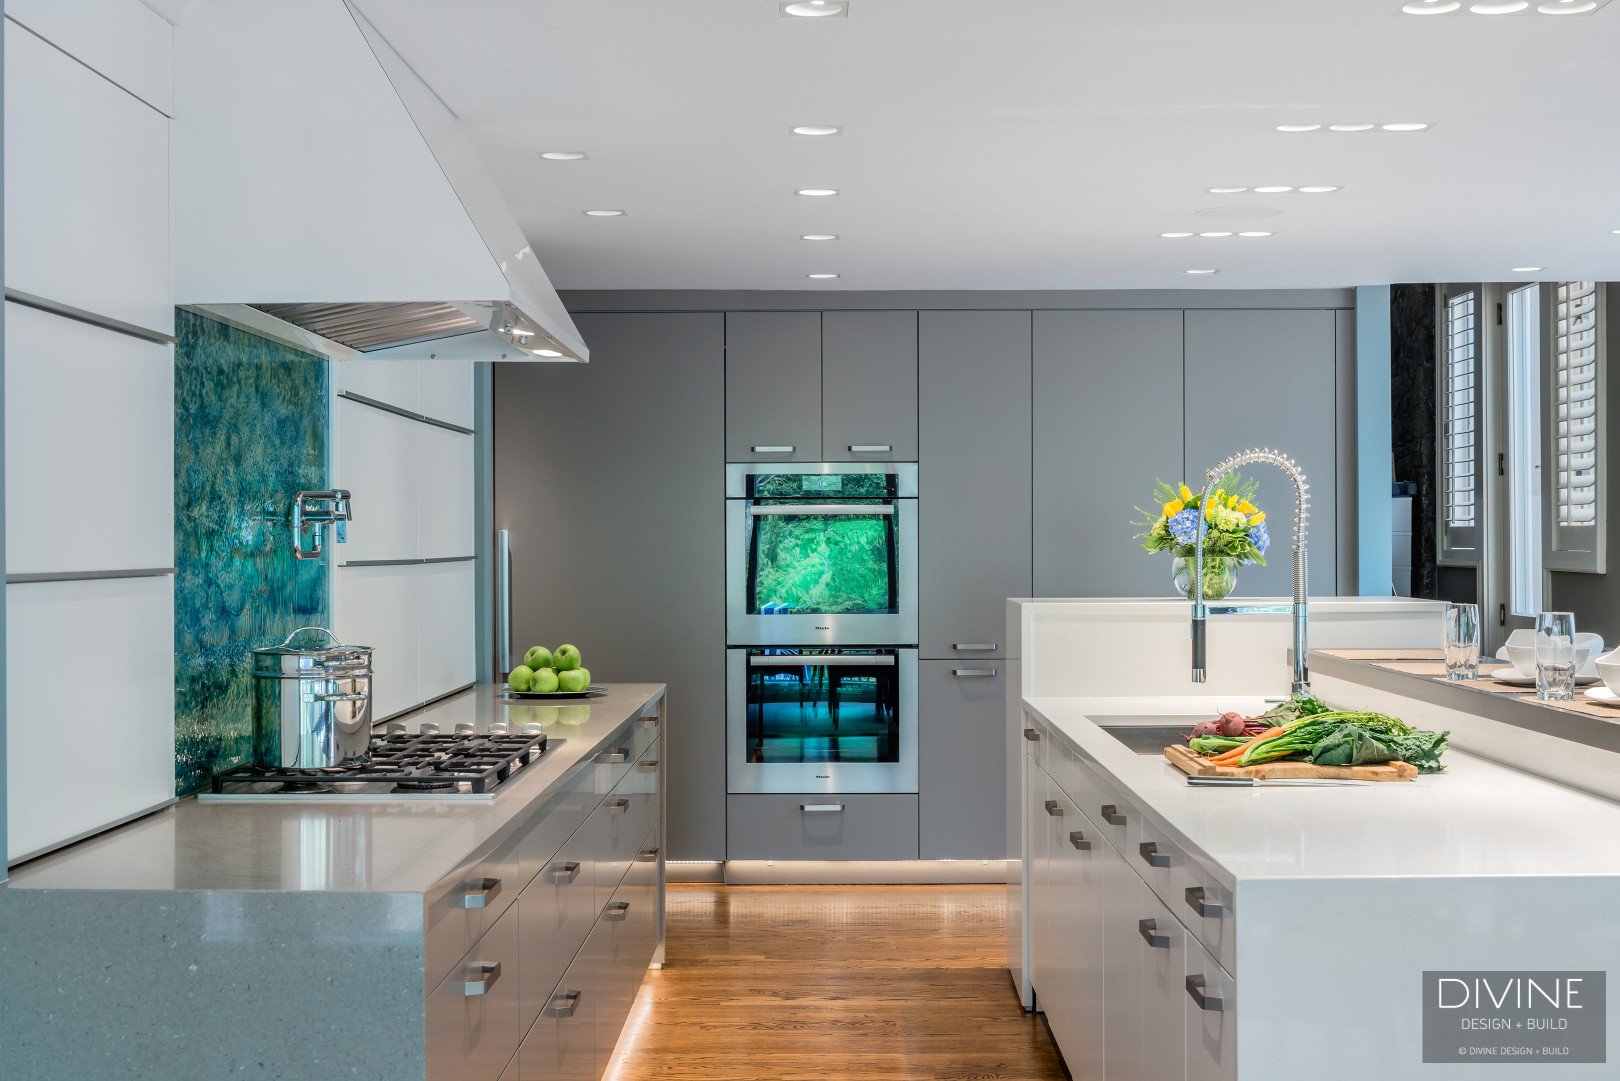 13.divine-design-center-Boston Weston Contemporary Modern Kitchen with Glass Accents.jpg